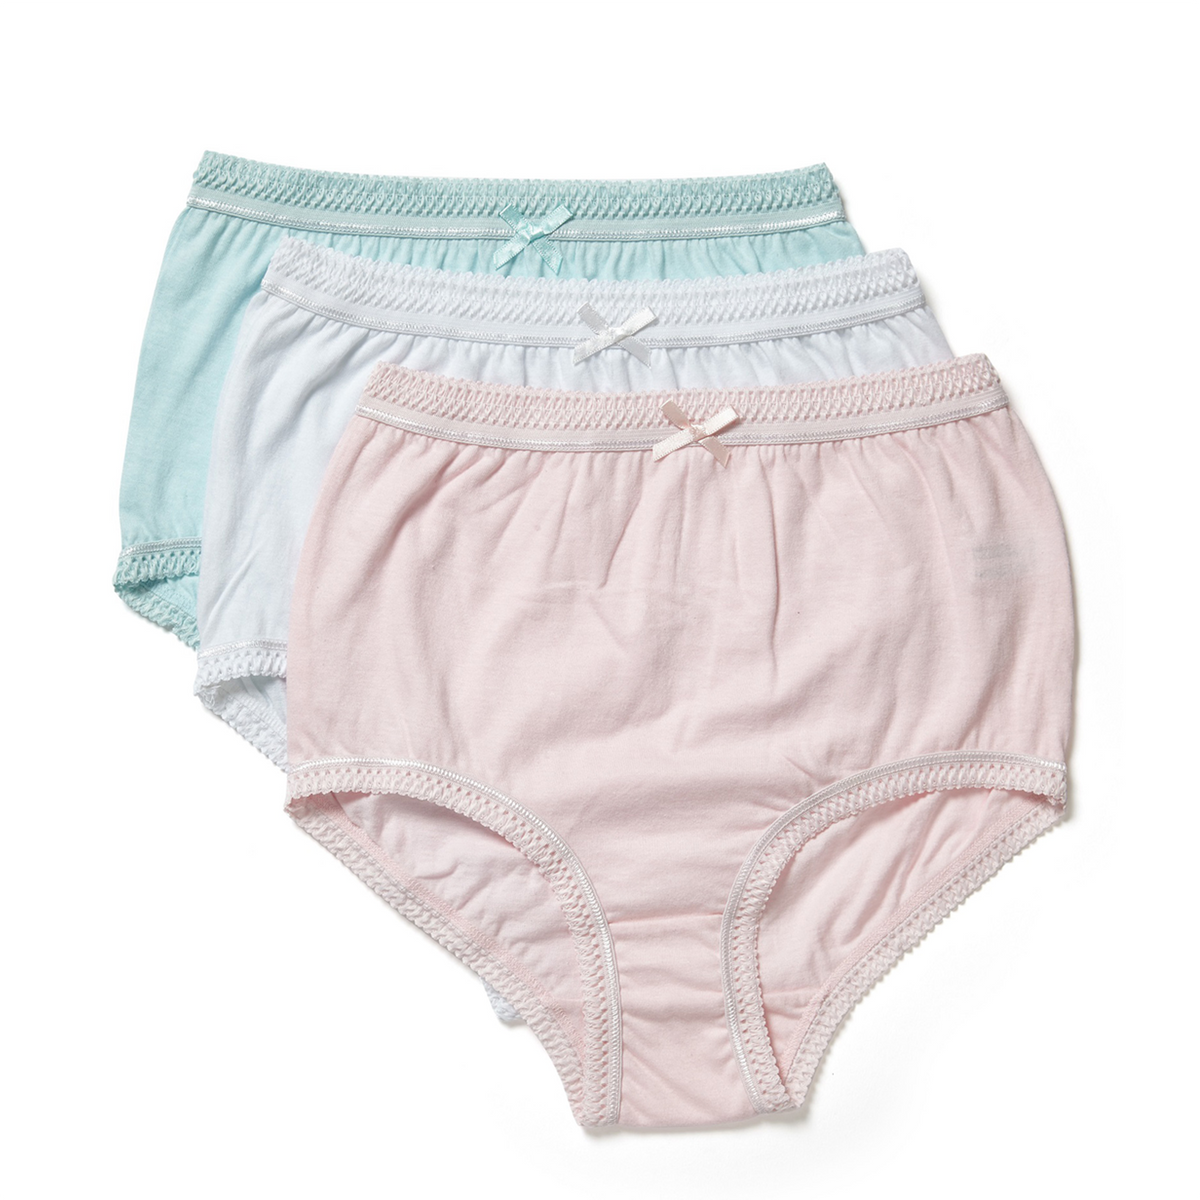 Cotton Panties-Buy Regular Panties In Solid Pastel Colors Online